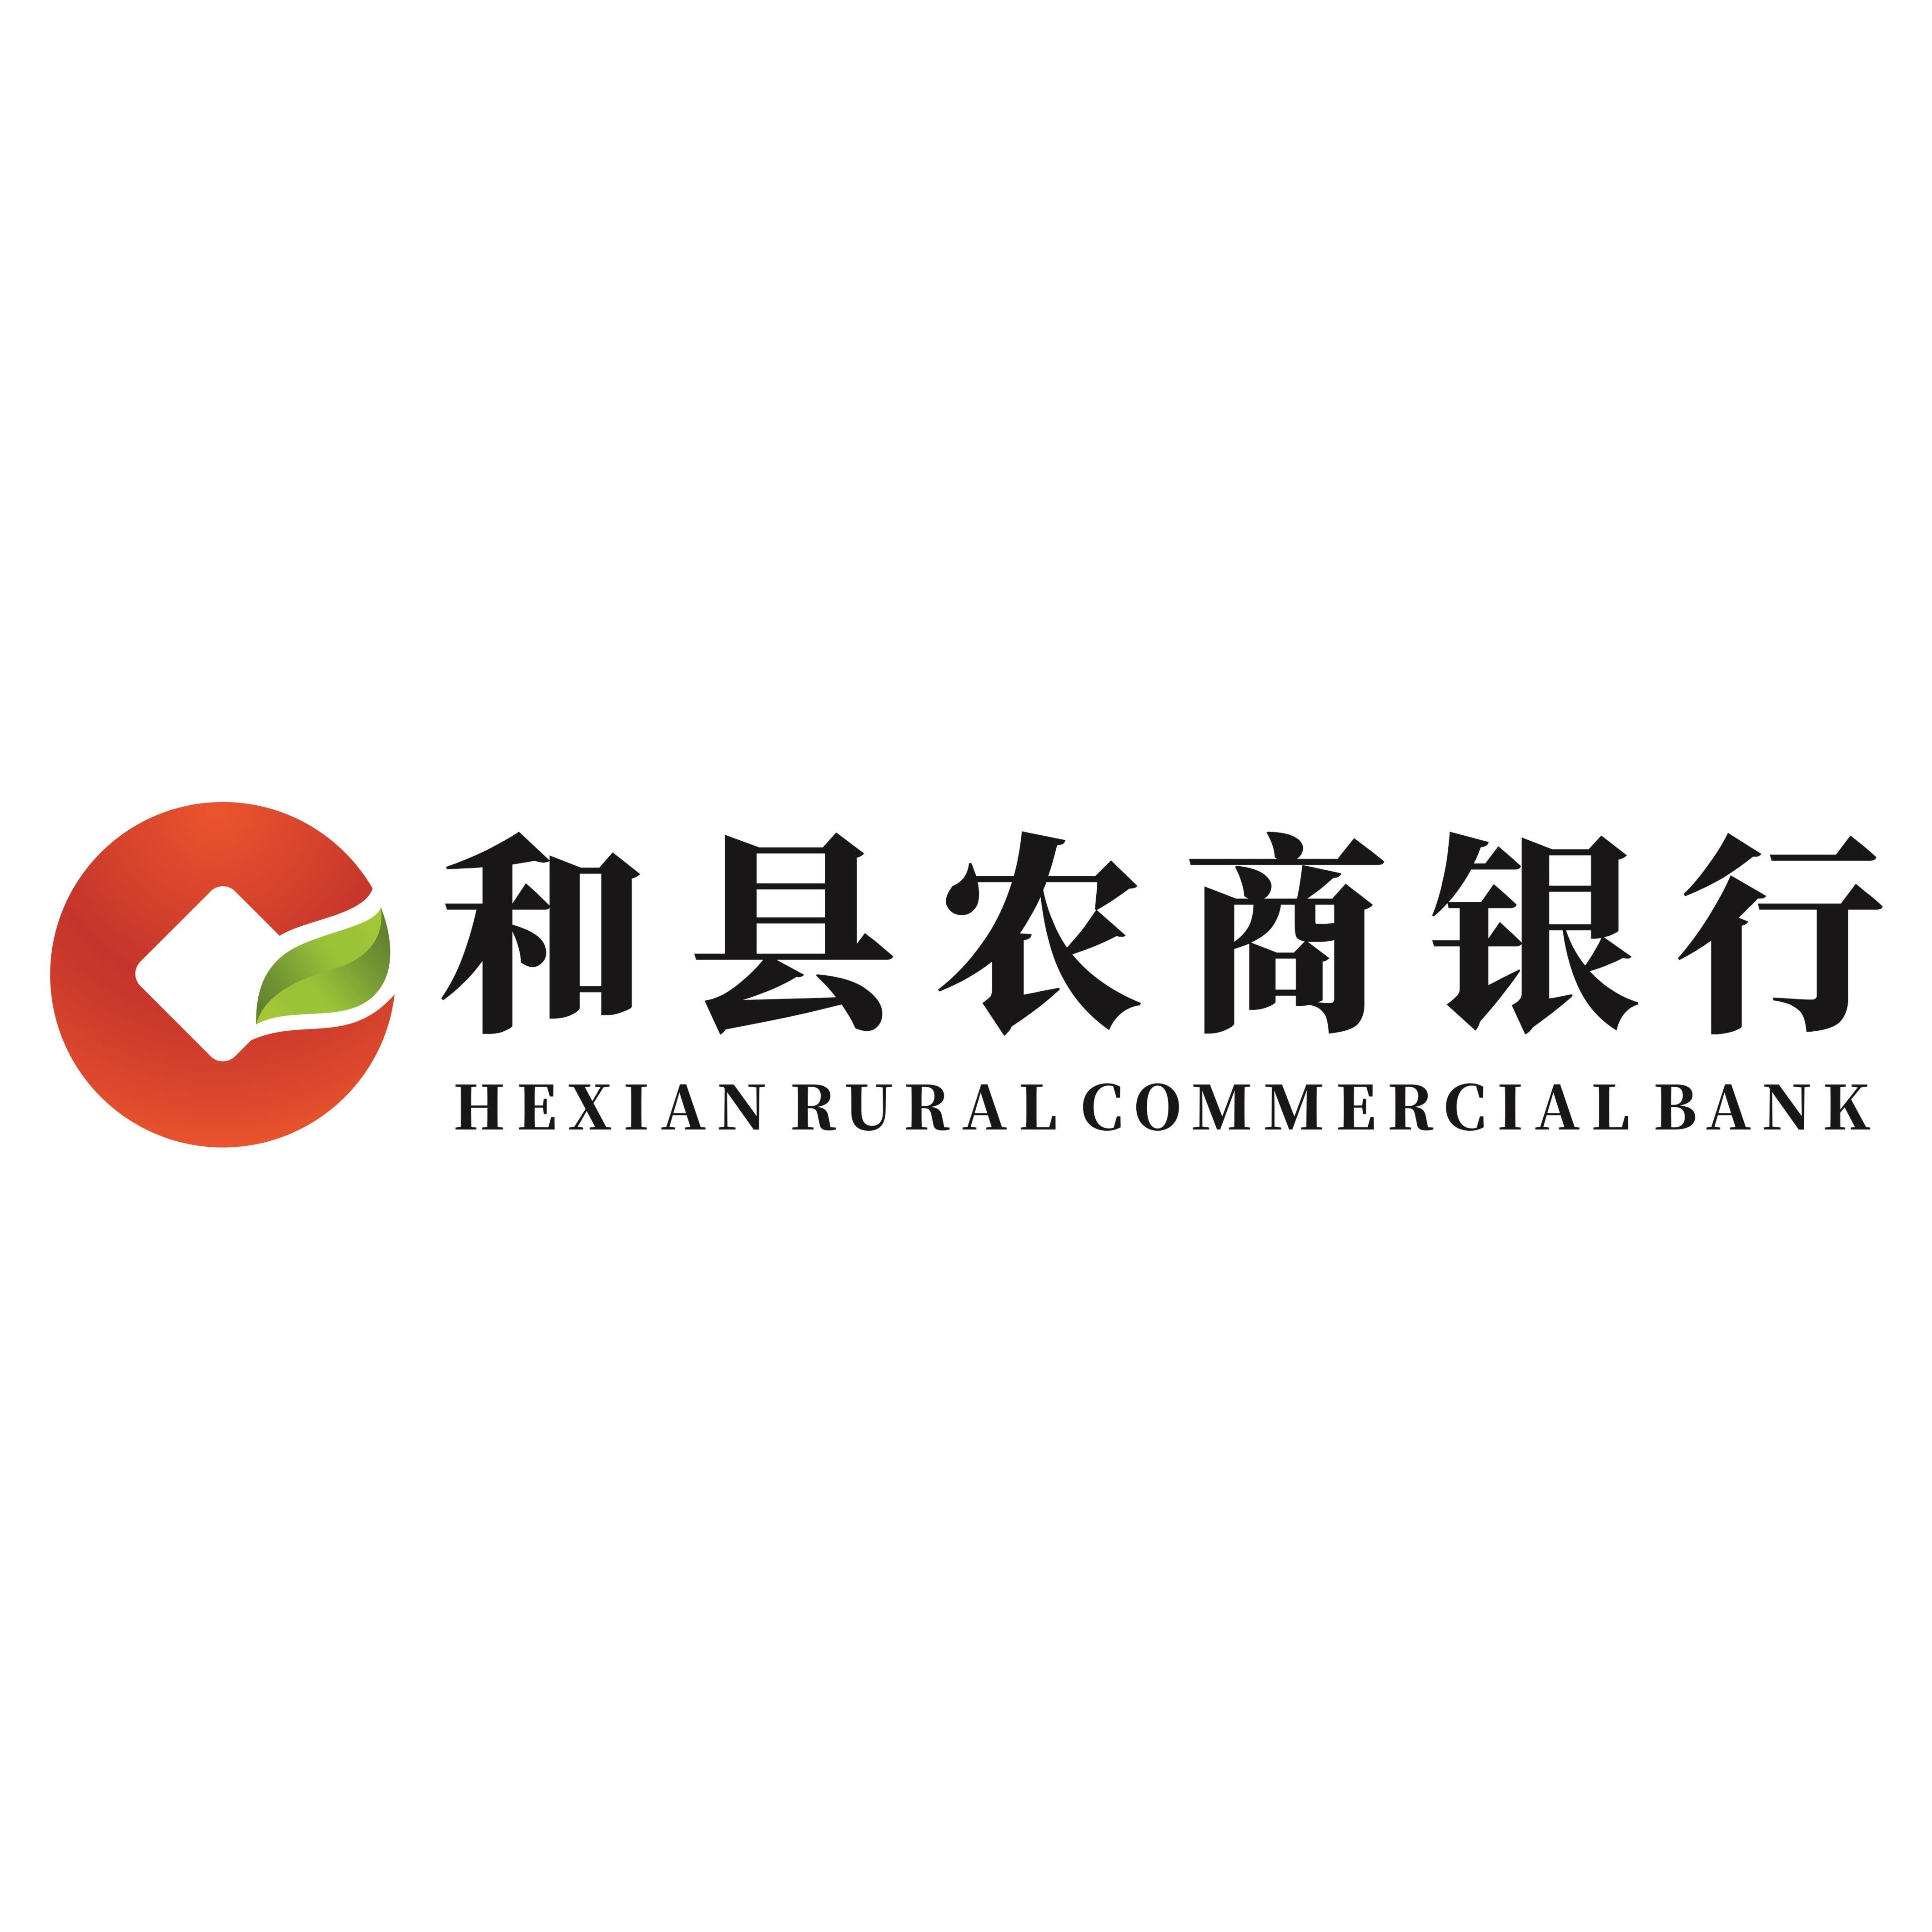 安徽和县农村商业银行股份有限公司滨河支行